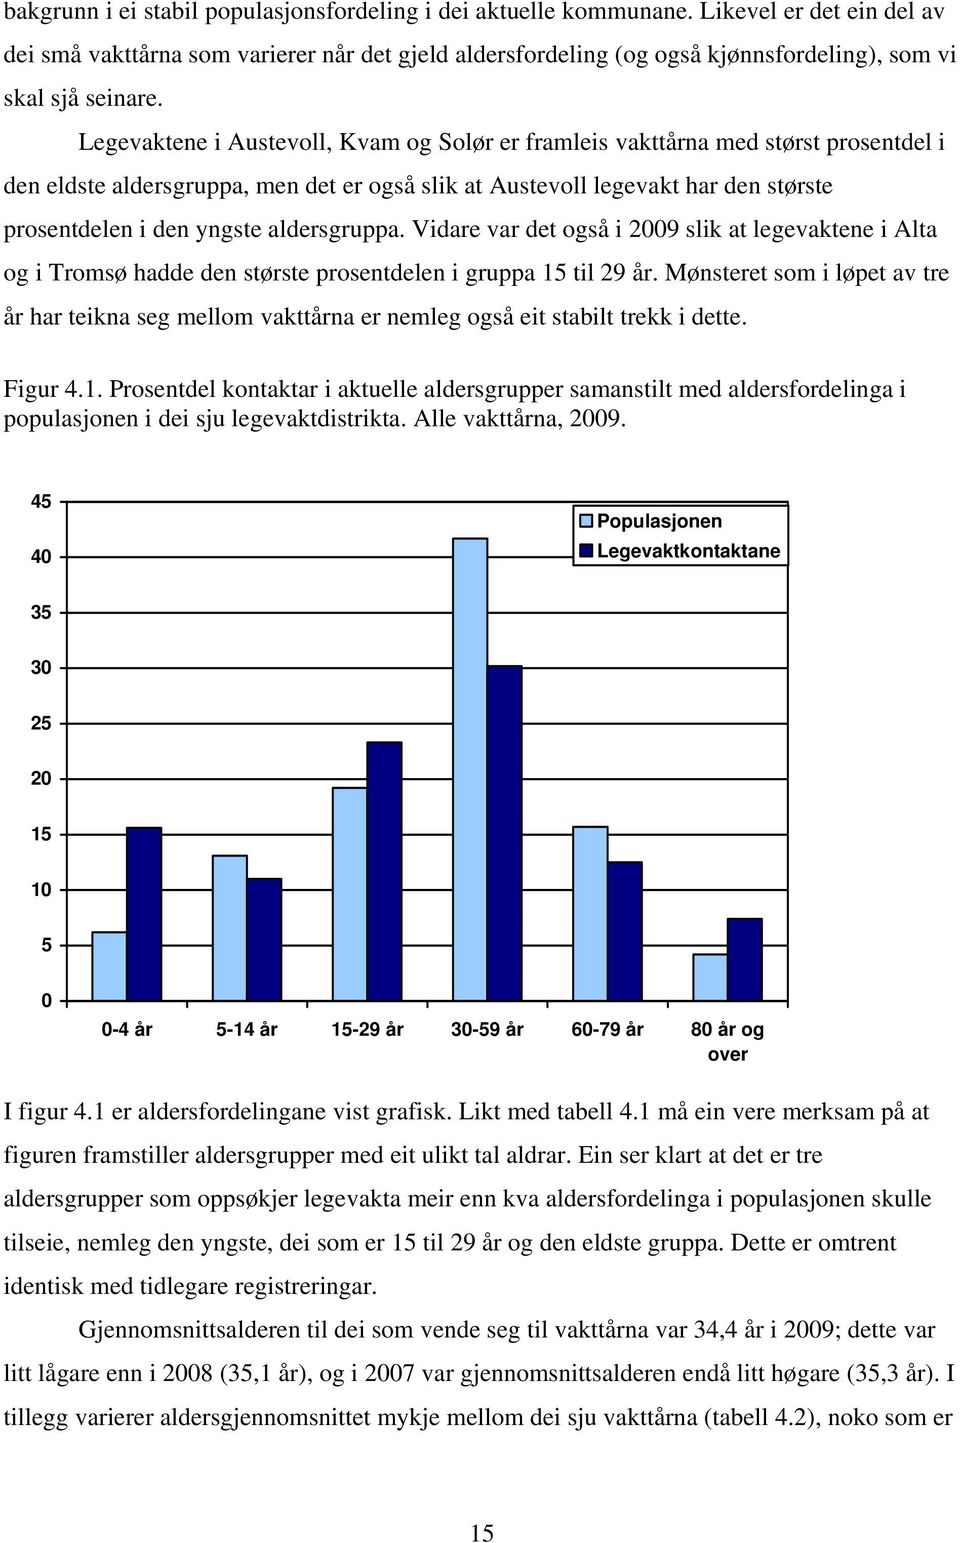 Legevaktene i Austevoll, Kvam og Solør er framleis vakttårna med størst prosentdel i den eldste aldersgruppa, men det er også slik at Austevoll legevakt har den største prosentdelen i den yngste